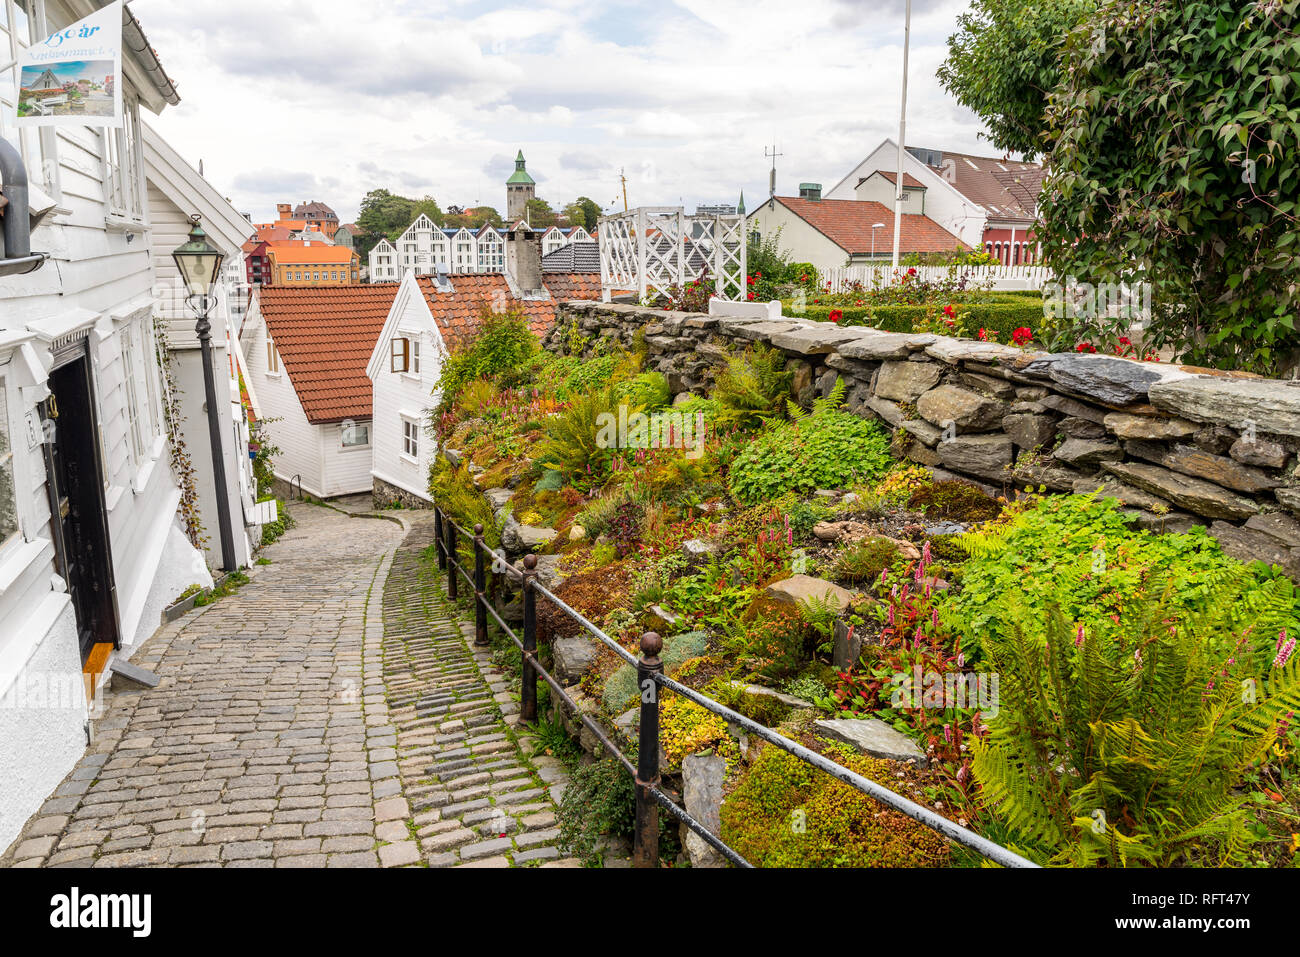 La vieille ville de Stavanger (Gamle Stavanger), avec de belles maisons en bois blanc, traditionnel. Stavanger, Norvège Banque D'Images